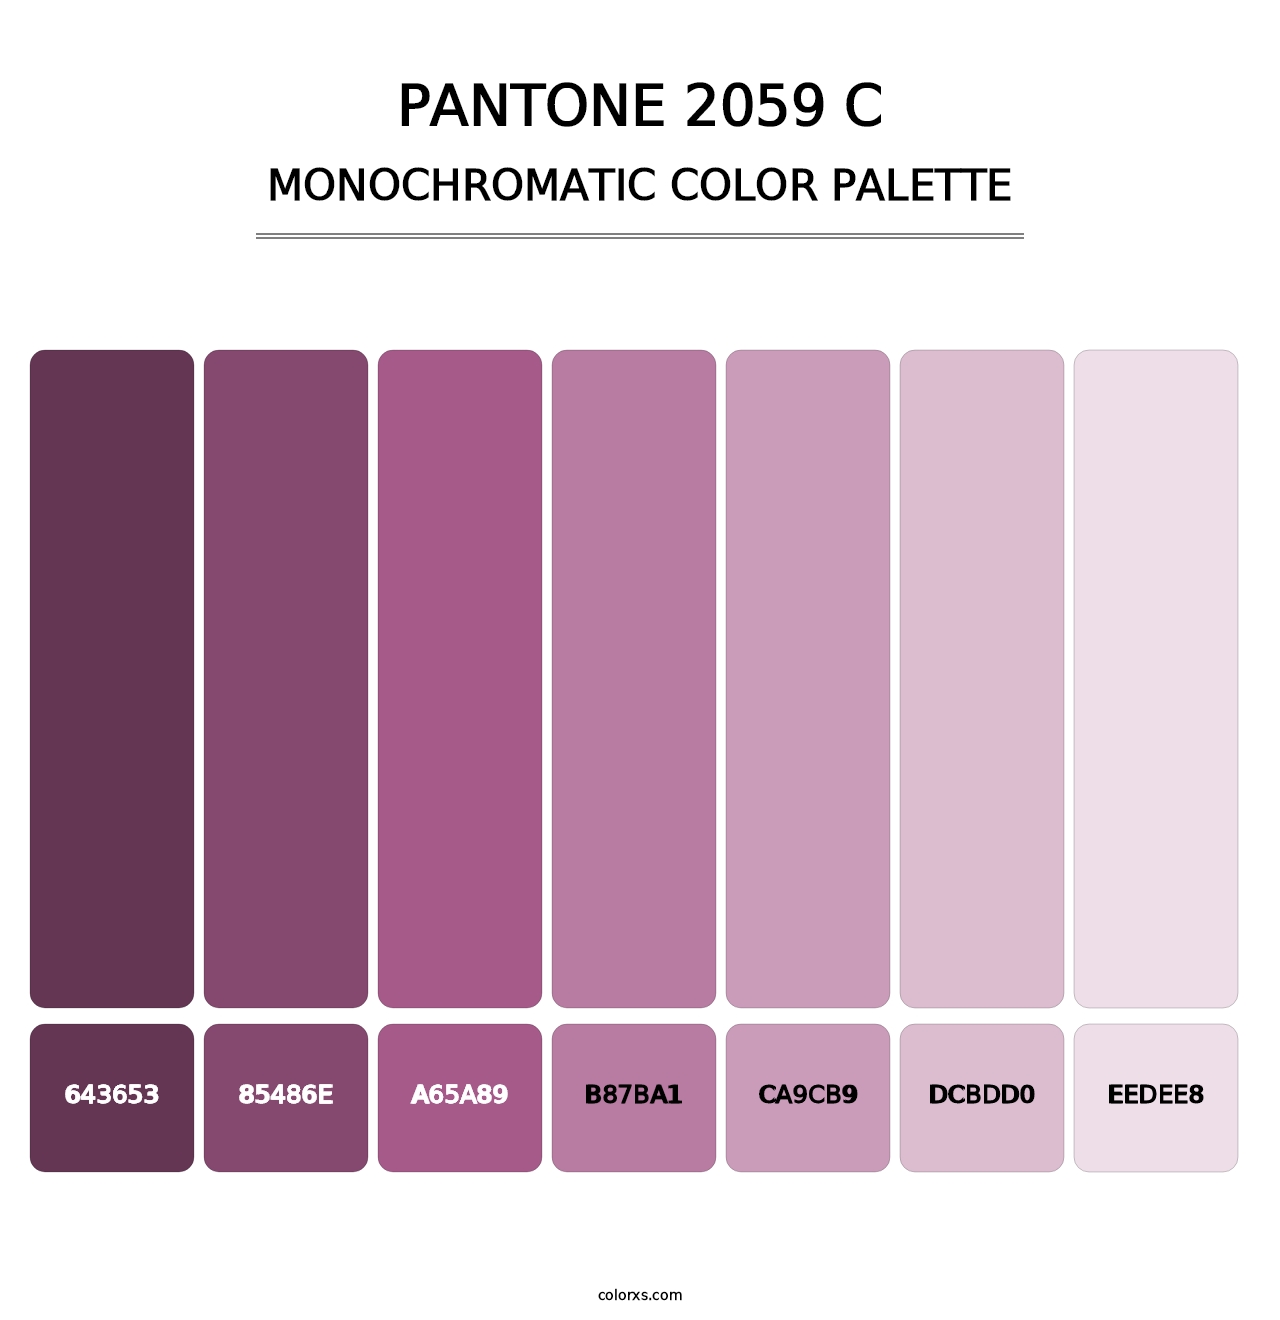 PANTONE 2059 C - Monochromatic Color Palette